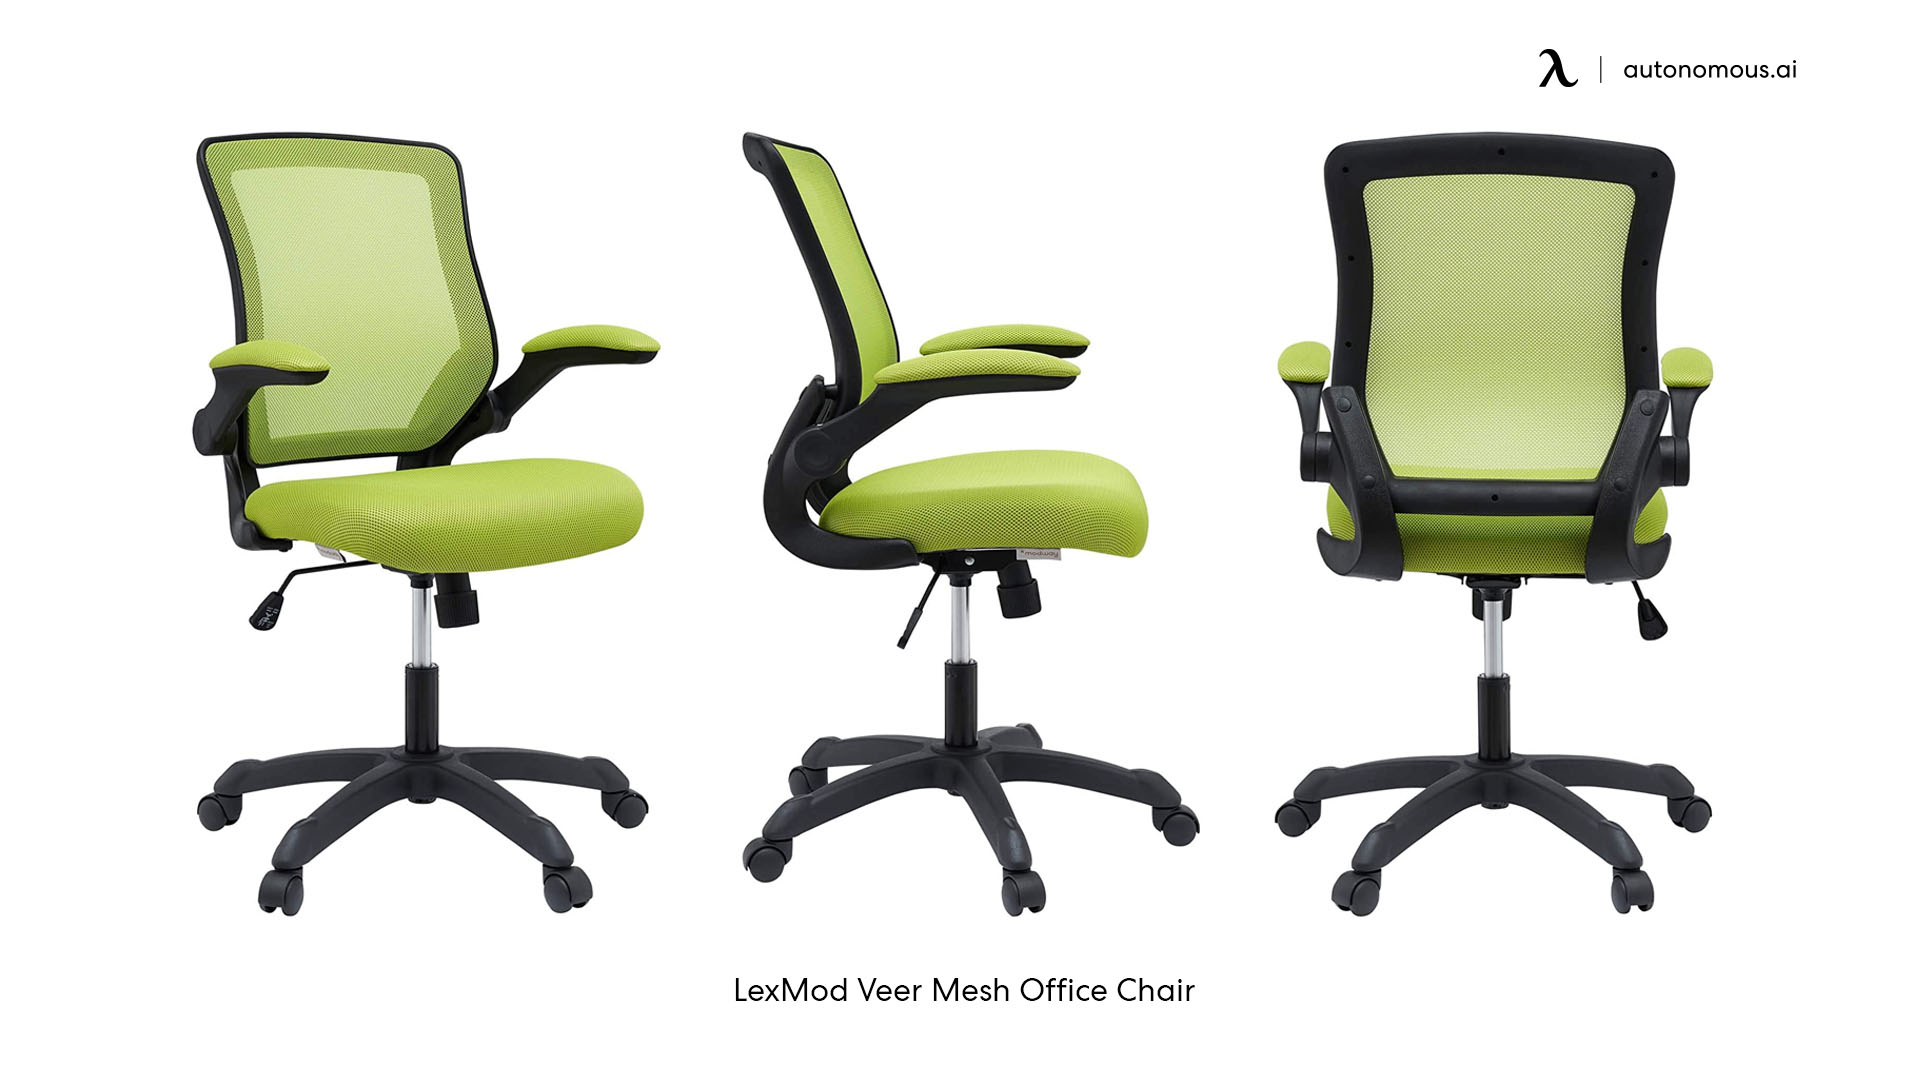 LexMod Veer Mesh Office Chair